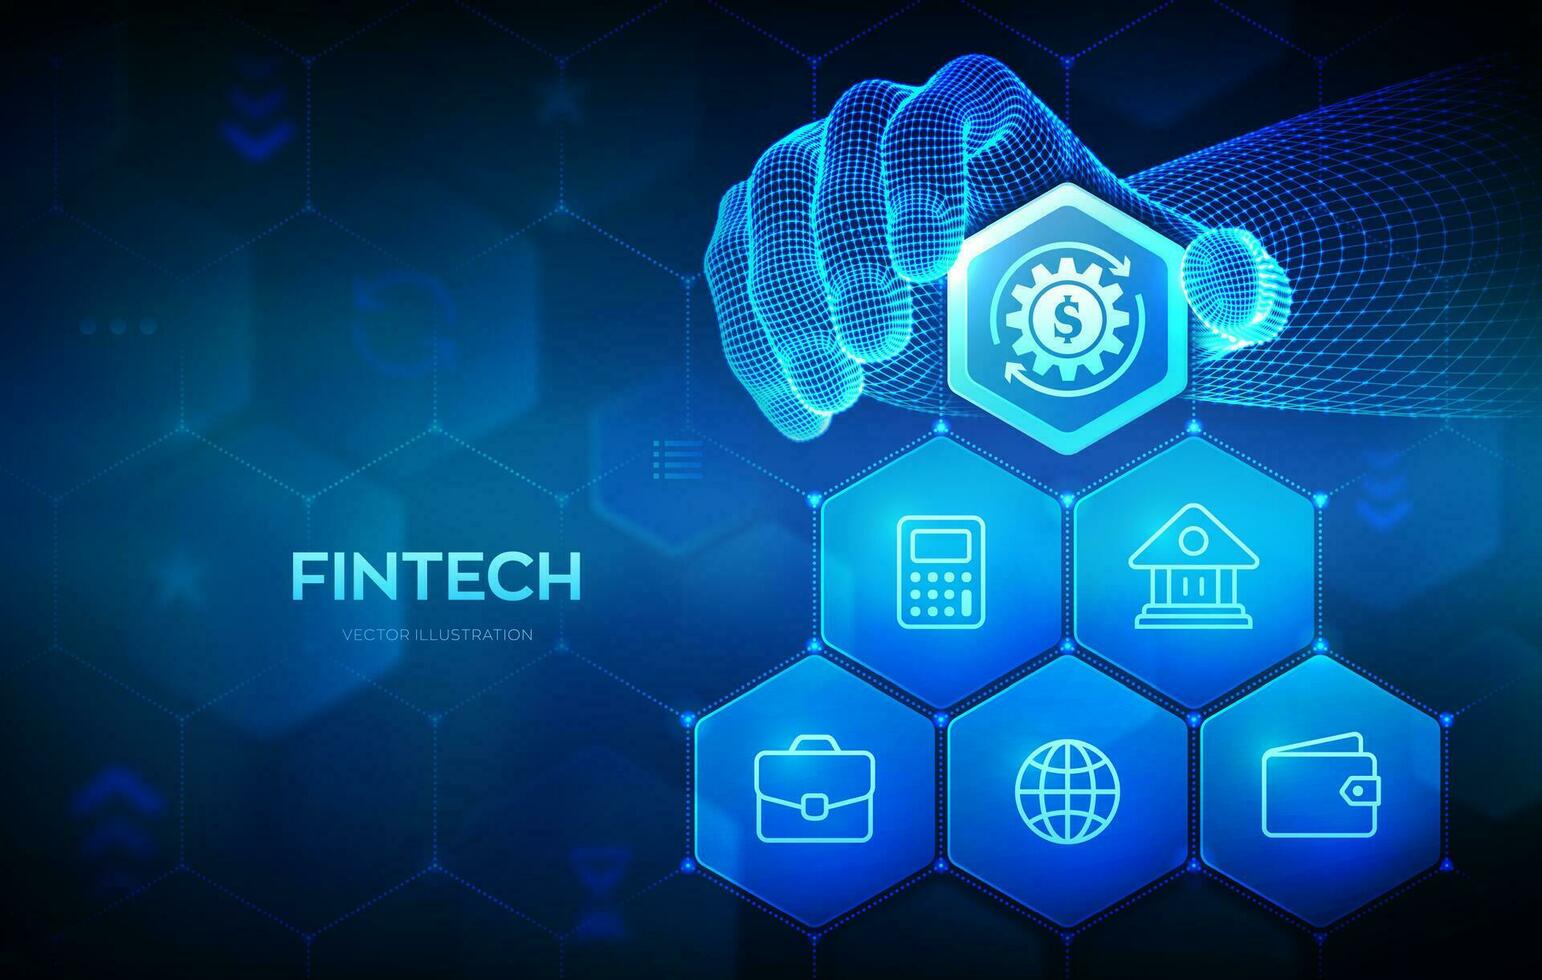 fintech. financier technologie, en ligne bancaire et financement participatif affaires concept sur virtuel filtrer. filaire main des endroits un élément dans une composition visualisation fintech. vecteur illustration.